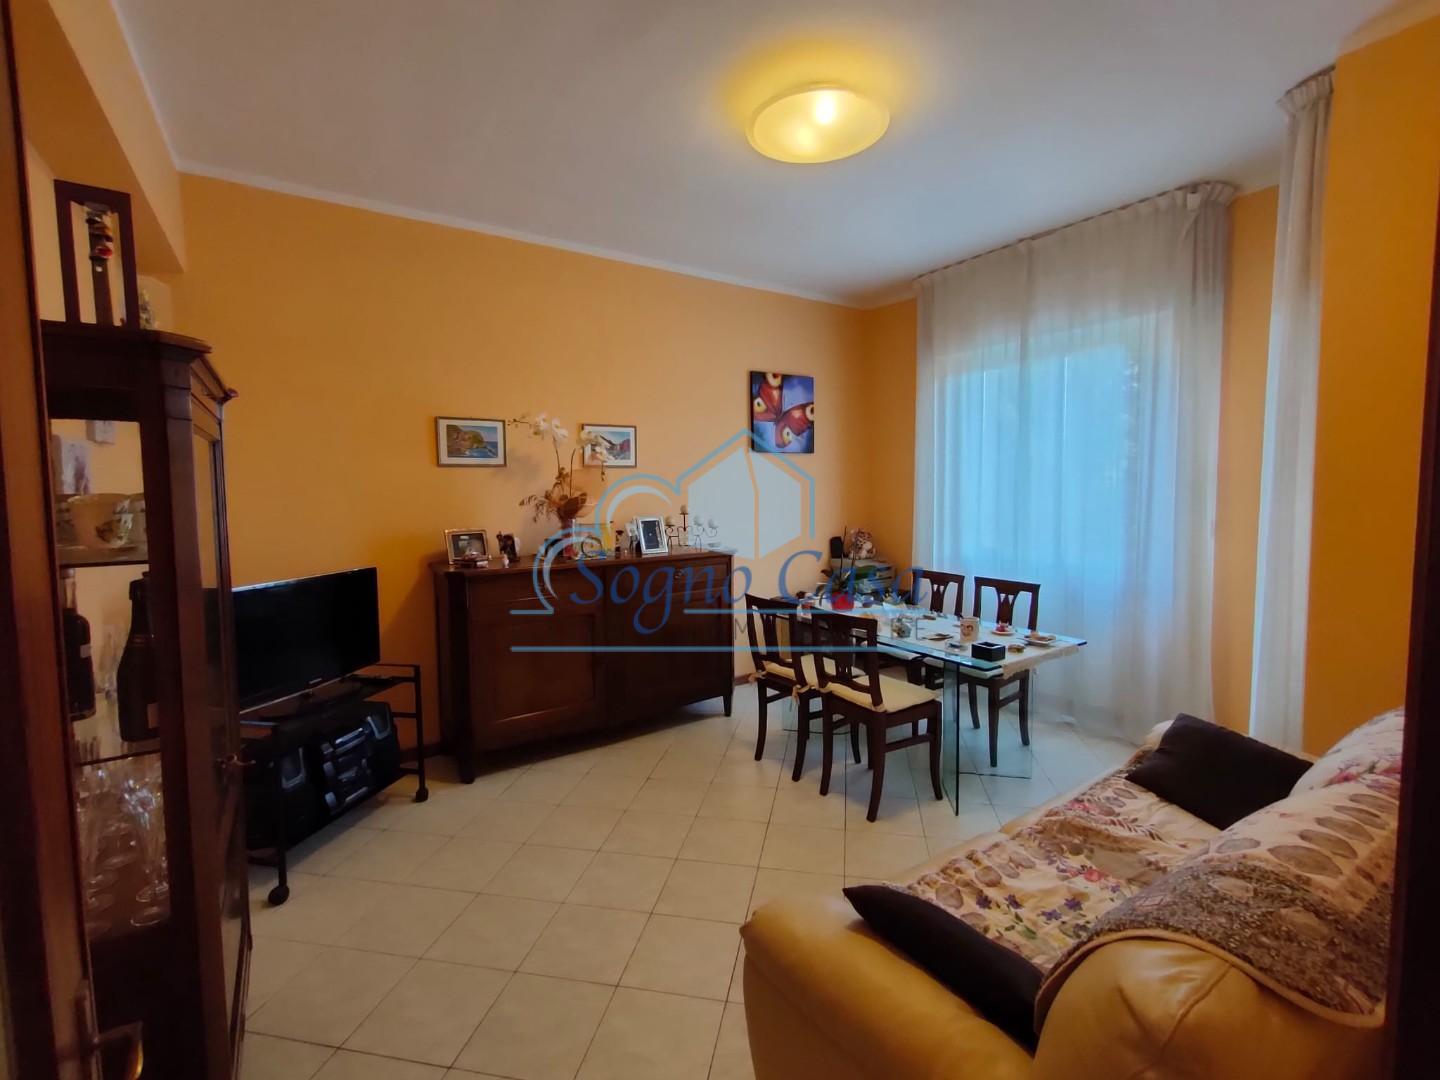 Appartamento in vendita a Arcola, 3 locali, prezzo € 125.000 | CambioCasa.it